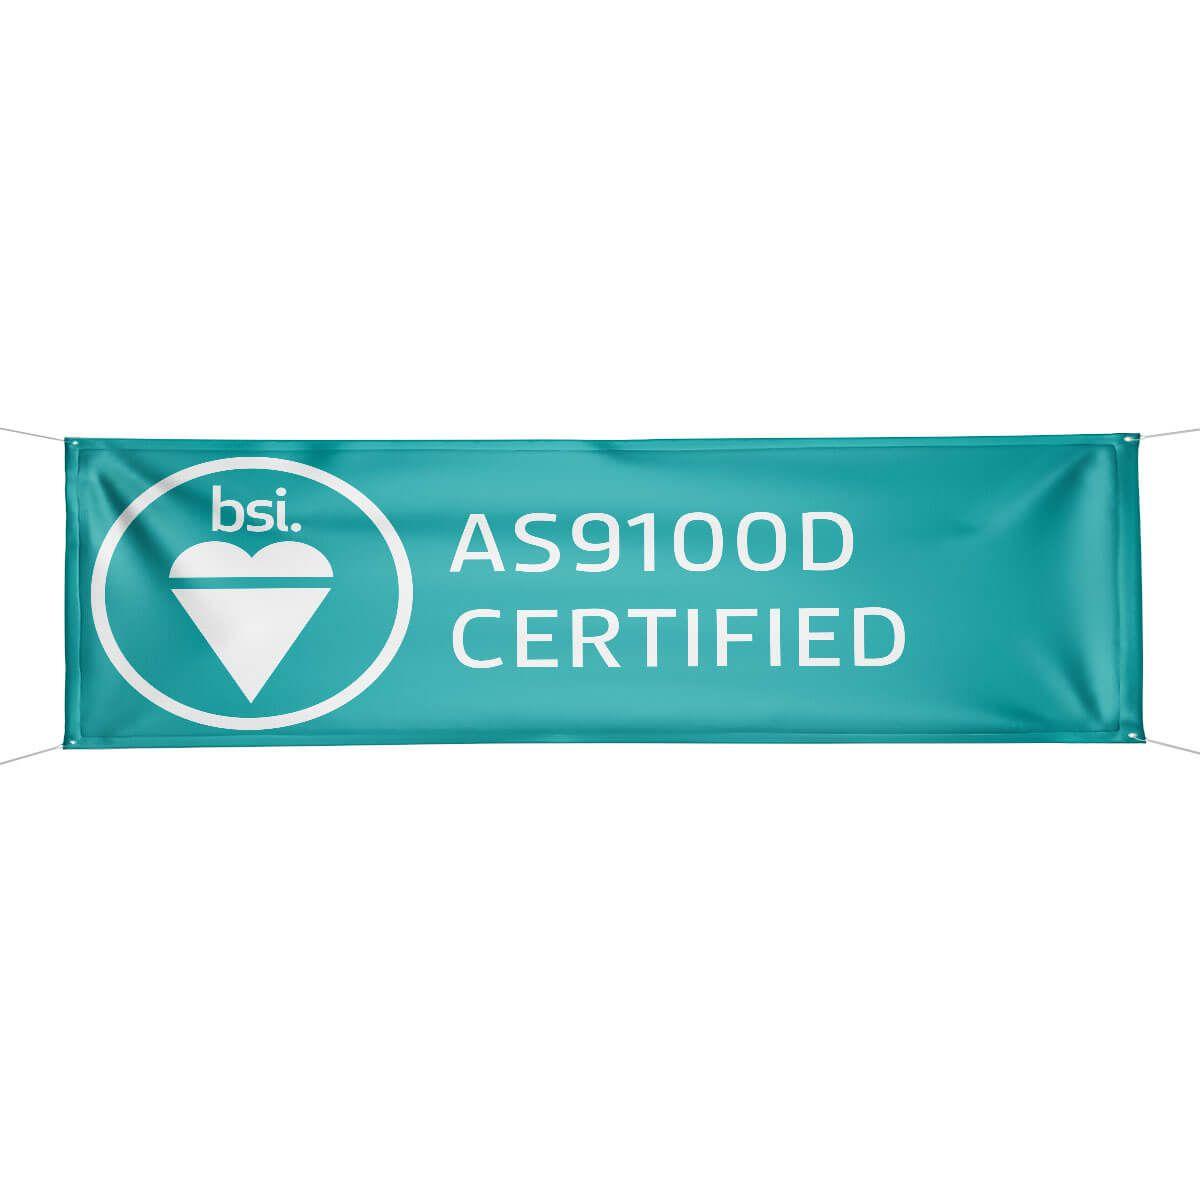 As9100d Logo - BSI AS9100D Certified Banner (3 ft x 9 ft)